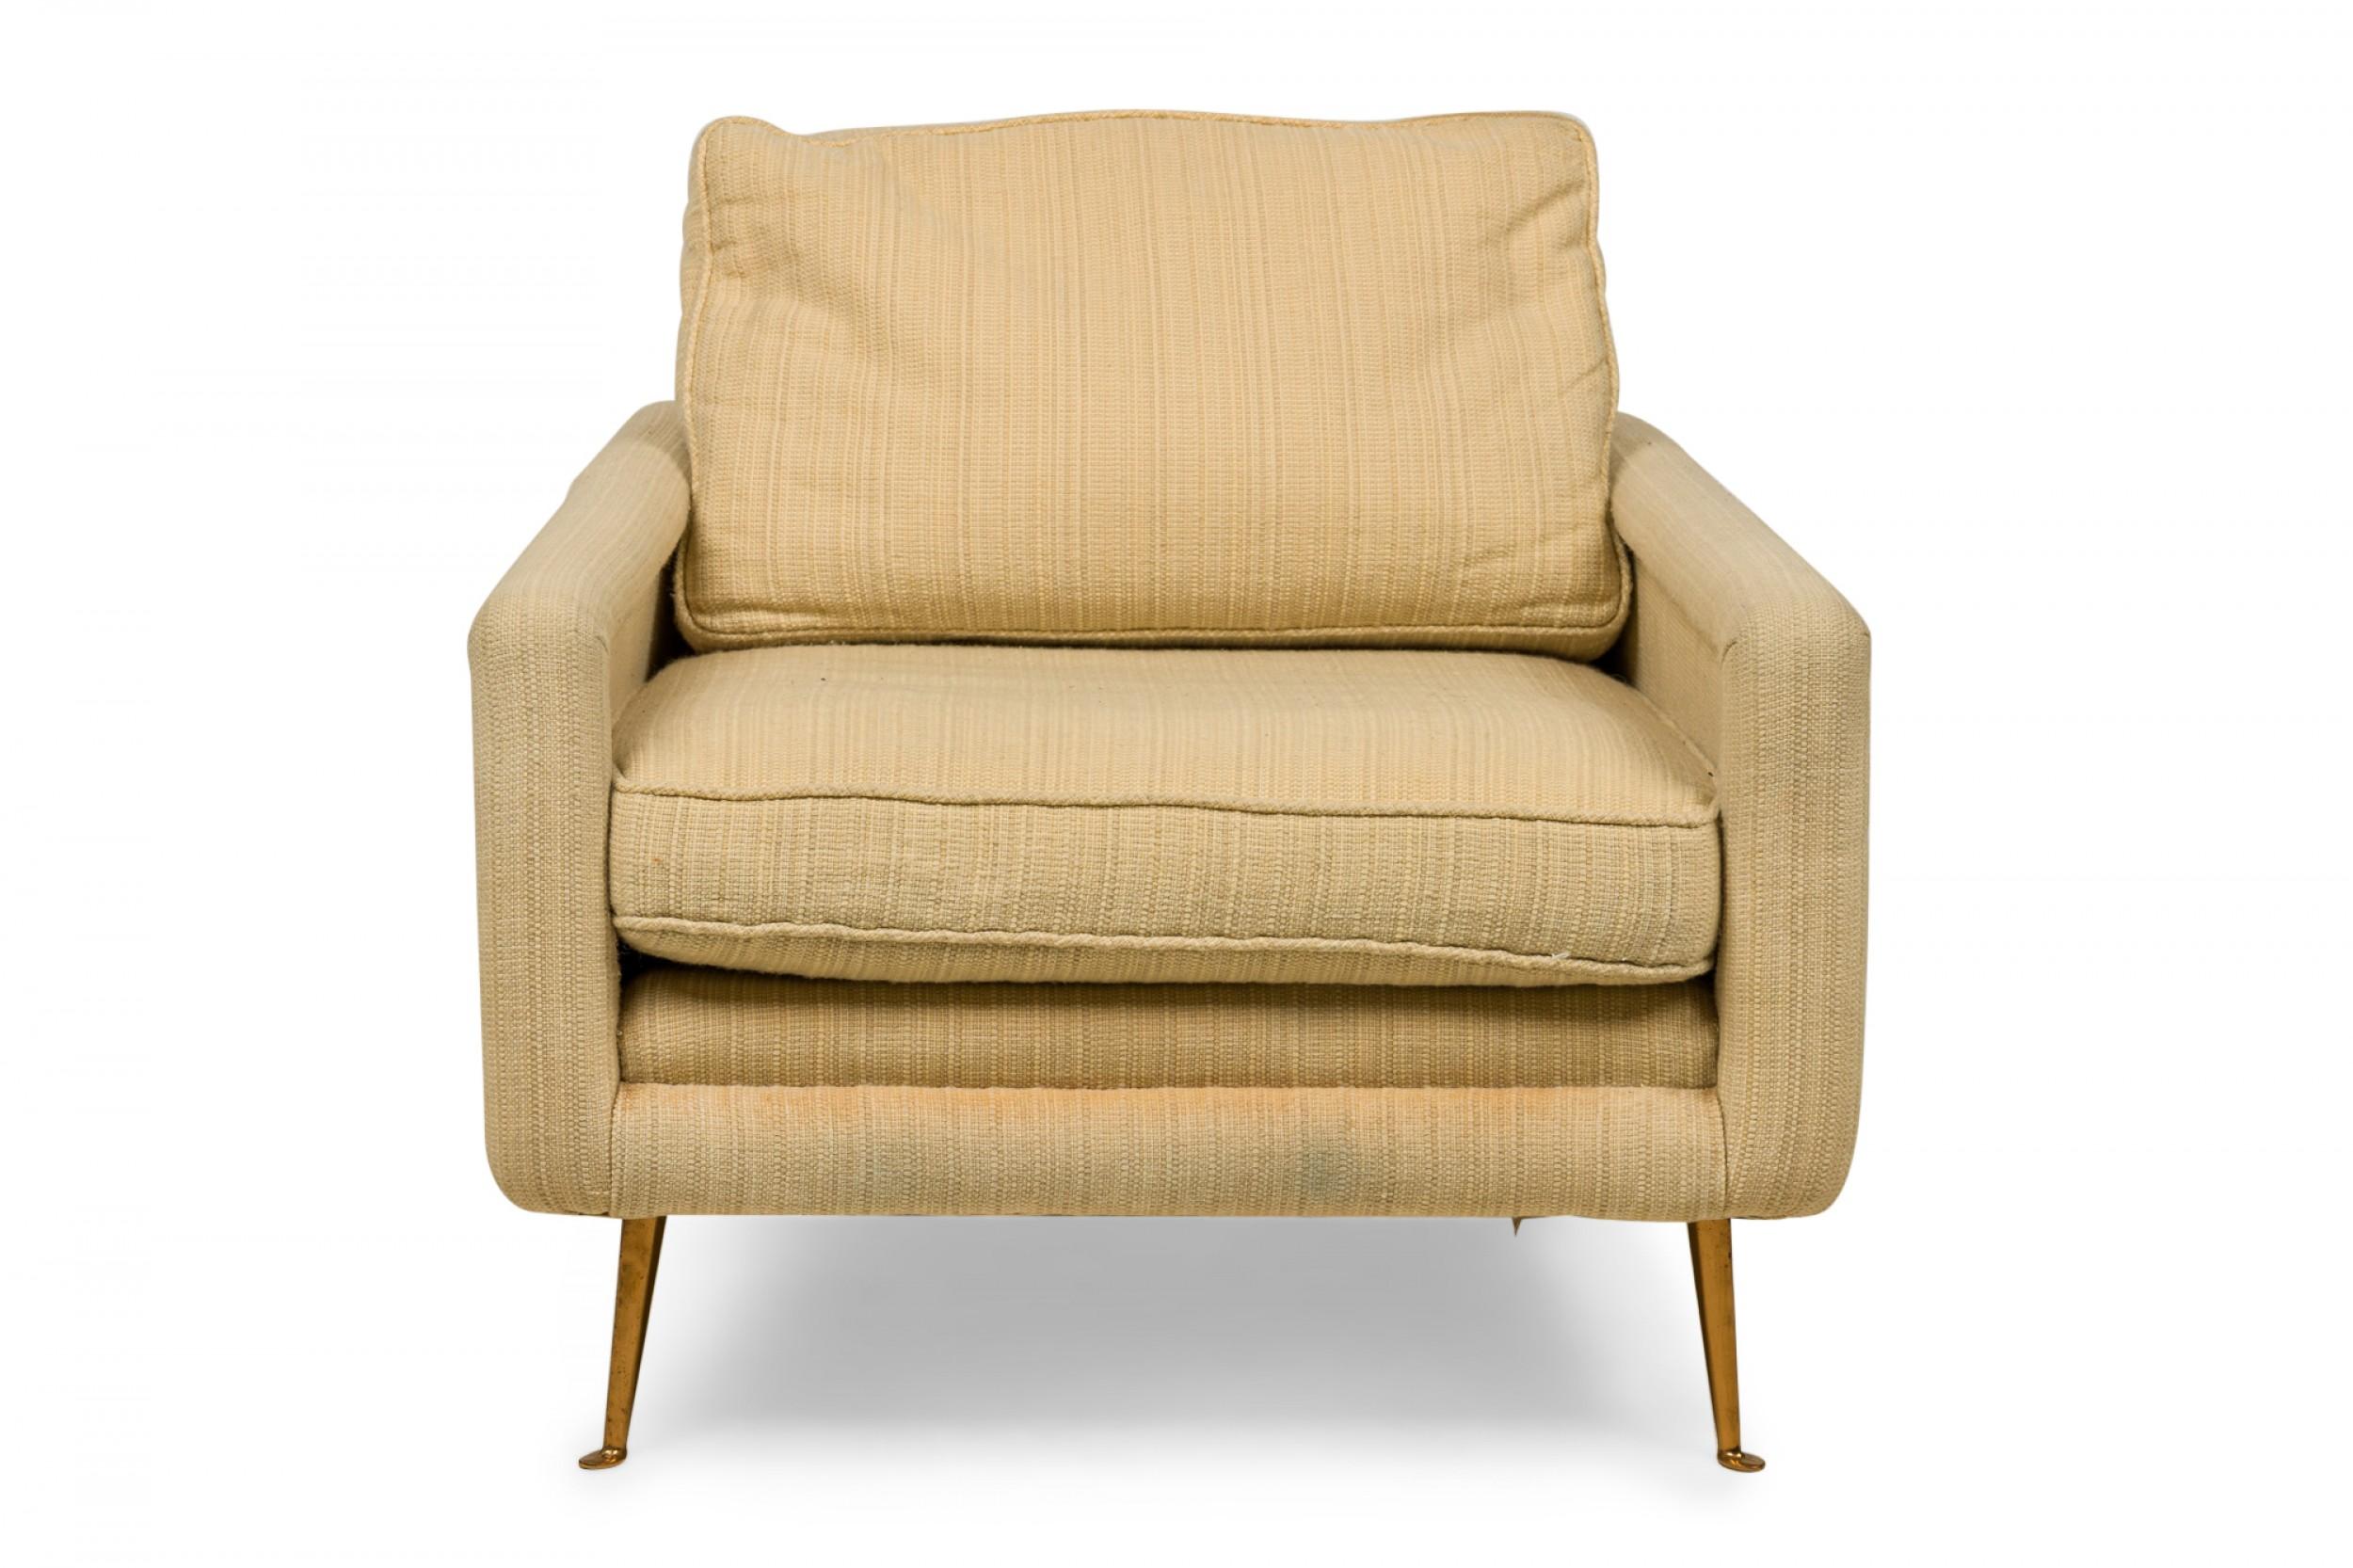 Amerikanischer Contemporary Lounge-/Sessel mit strukturiertem beigem Stoffbezug und abnehmbaren Rücken- und Sitzkissen auf vier spitz zulaufenden Bronzebeinen, die in runden Füßen enden.